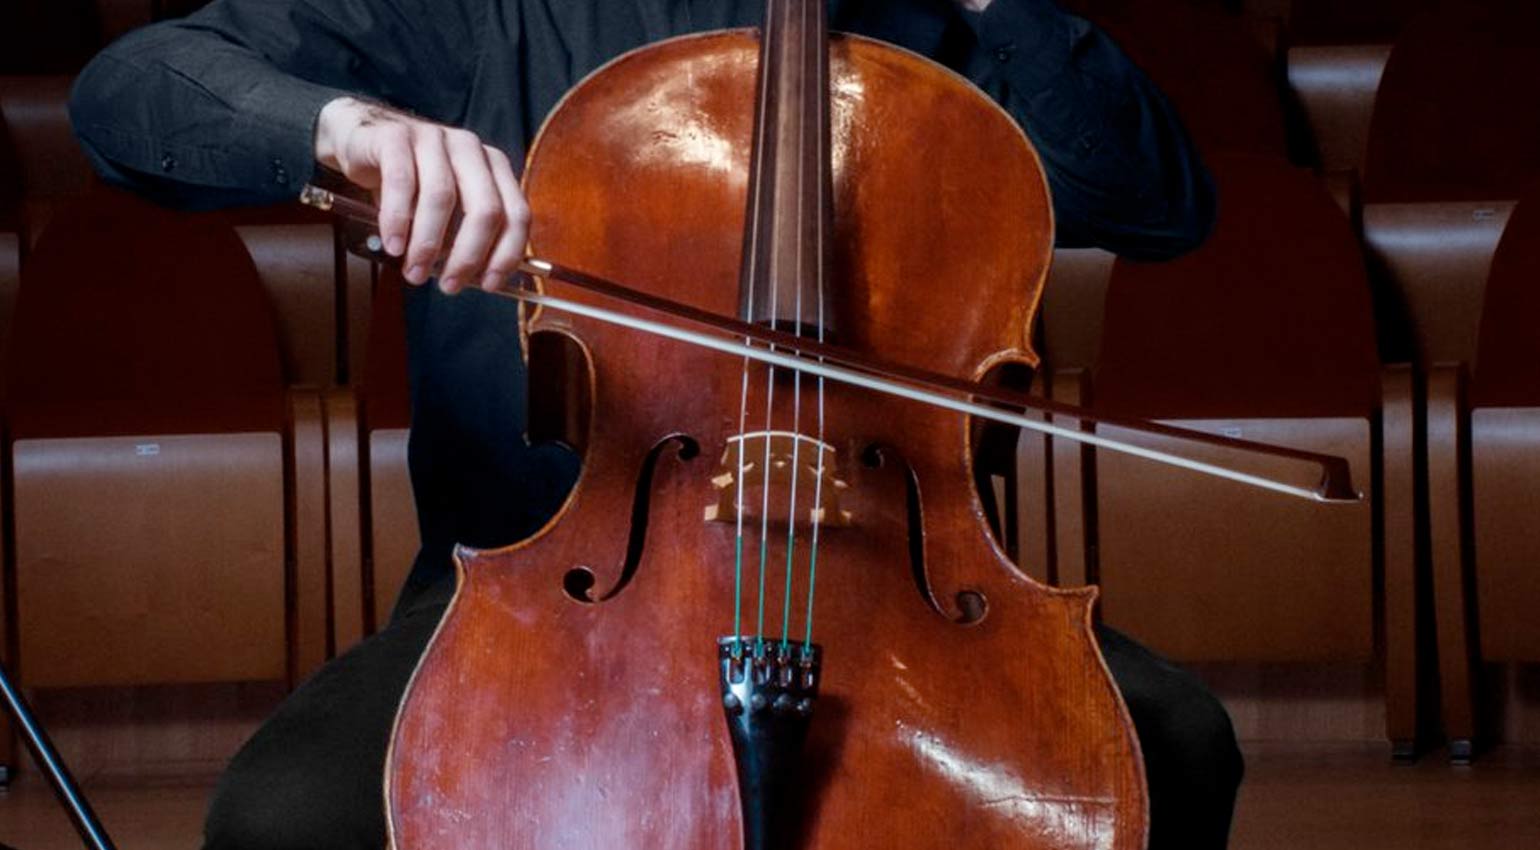 Native Instruments Stradivari Cello